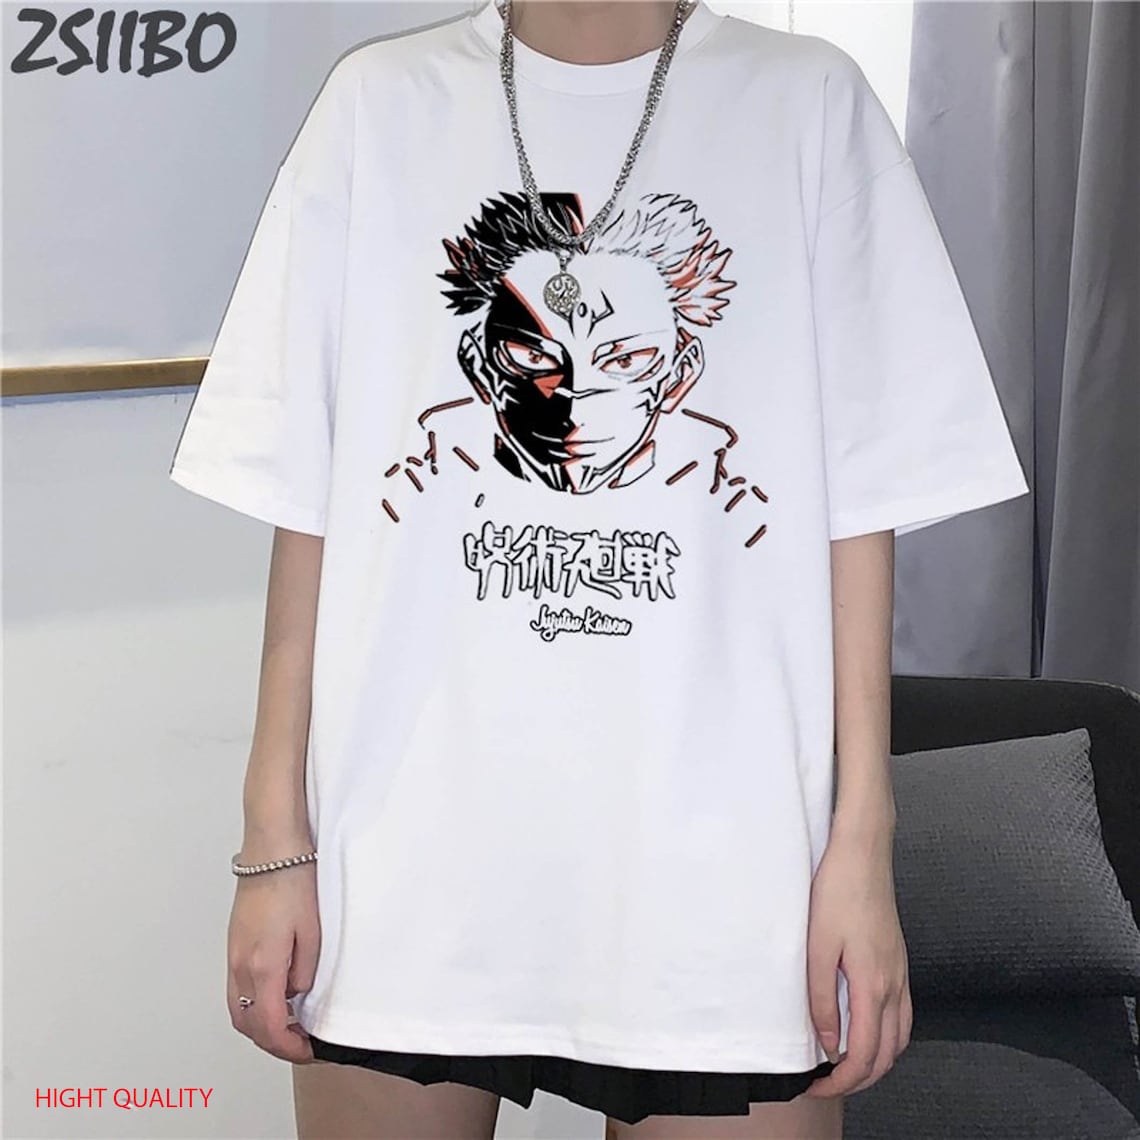 Jujutsu kaisen Classic T-Shirt cotton shirts men fashion | Etsy